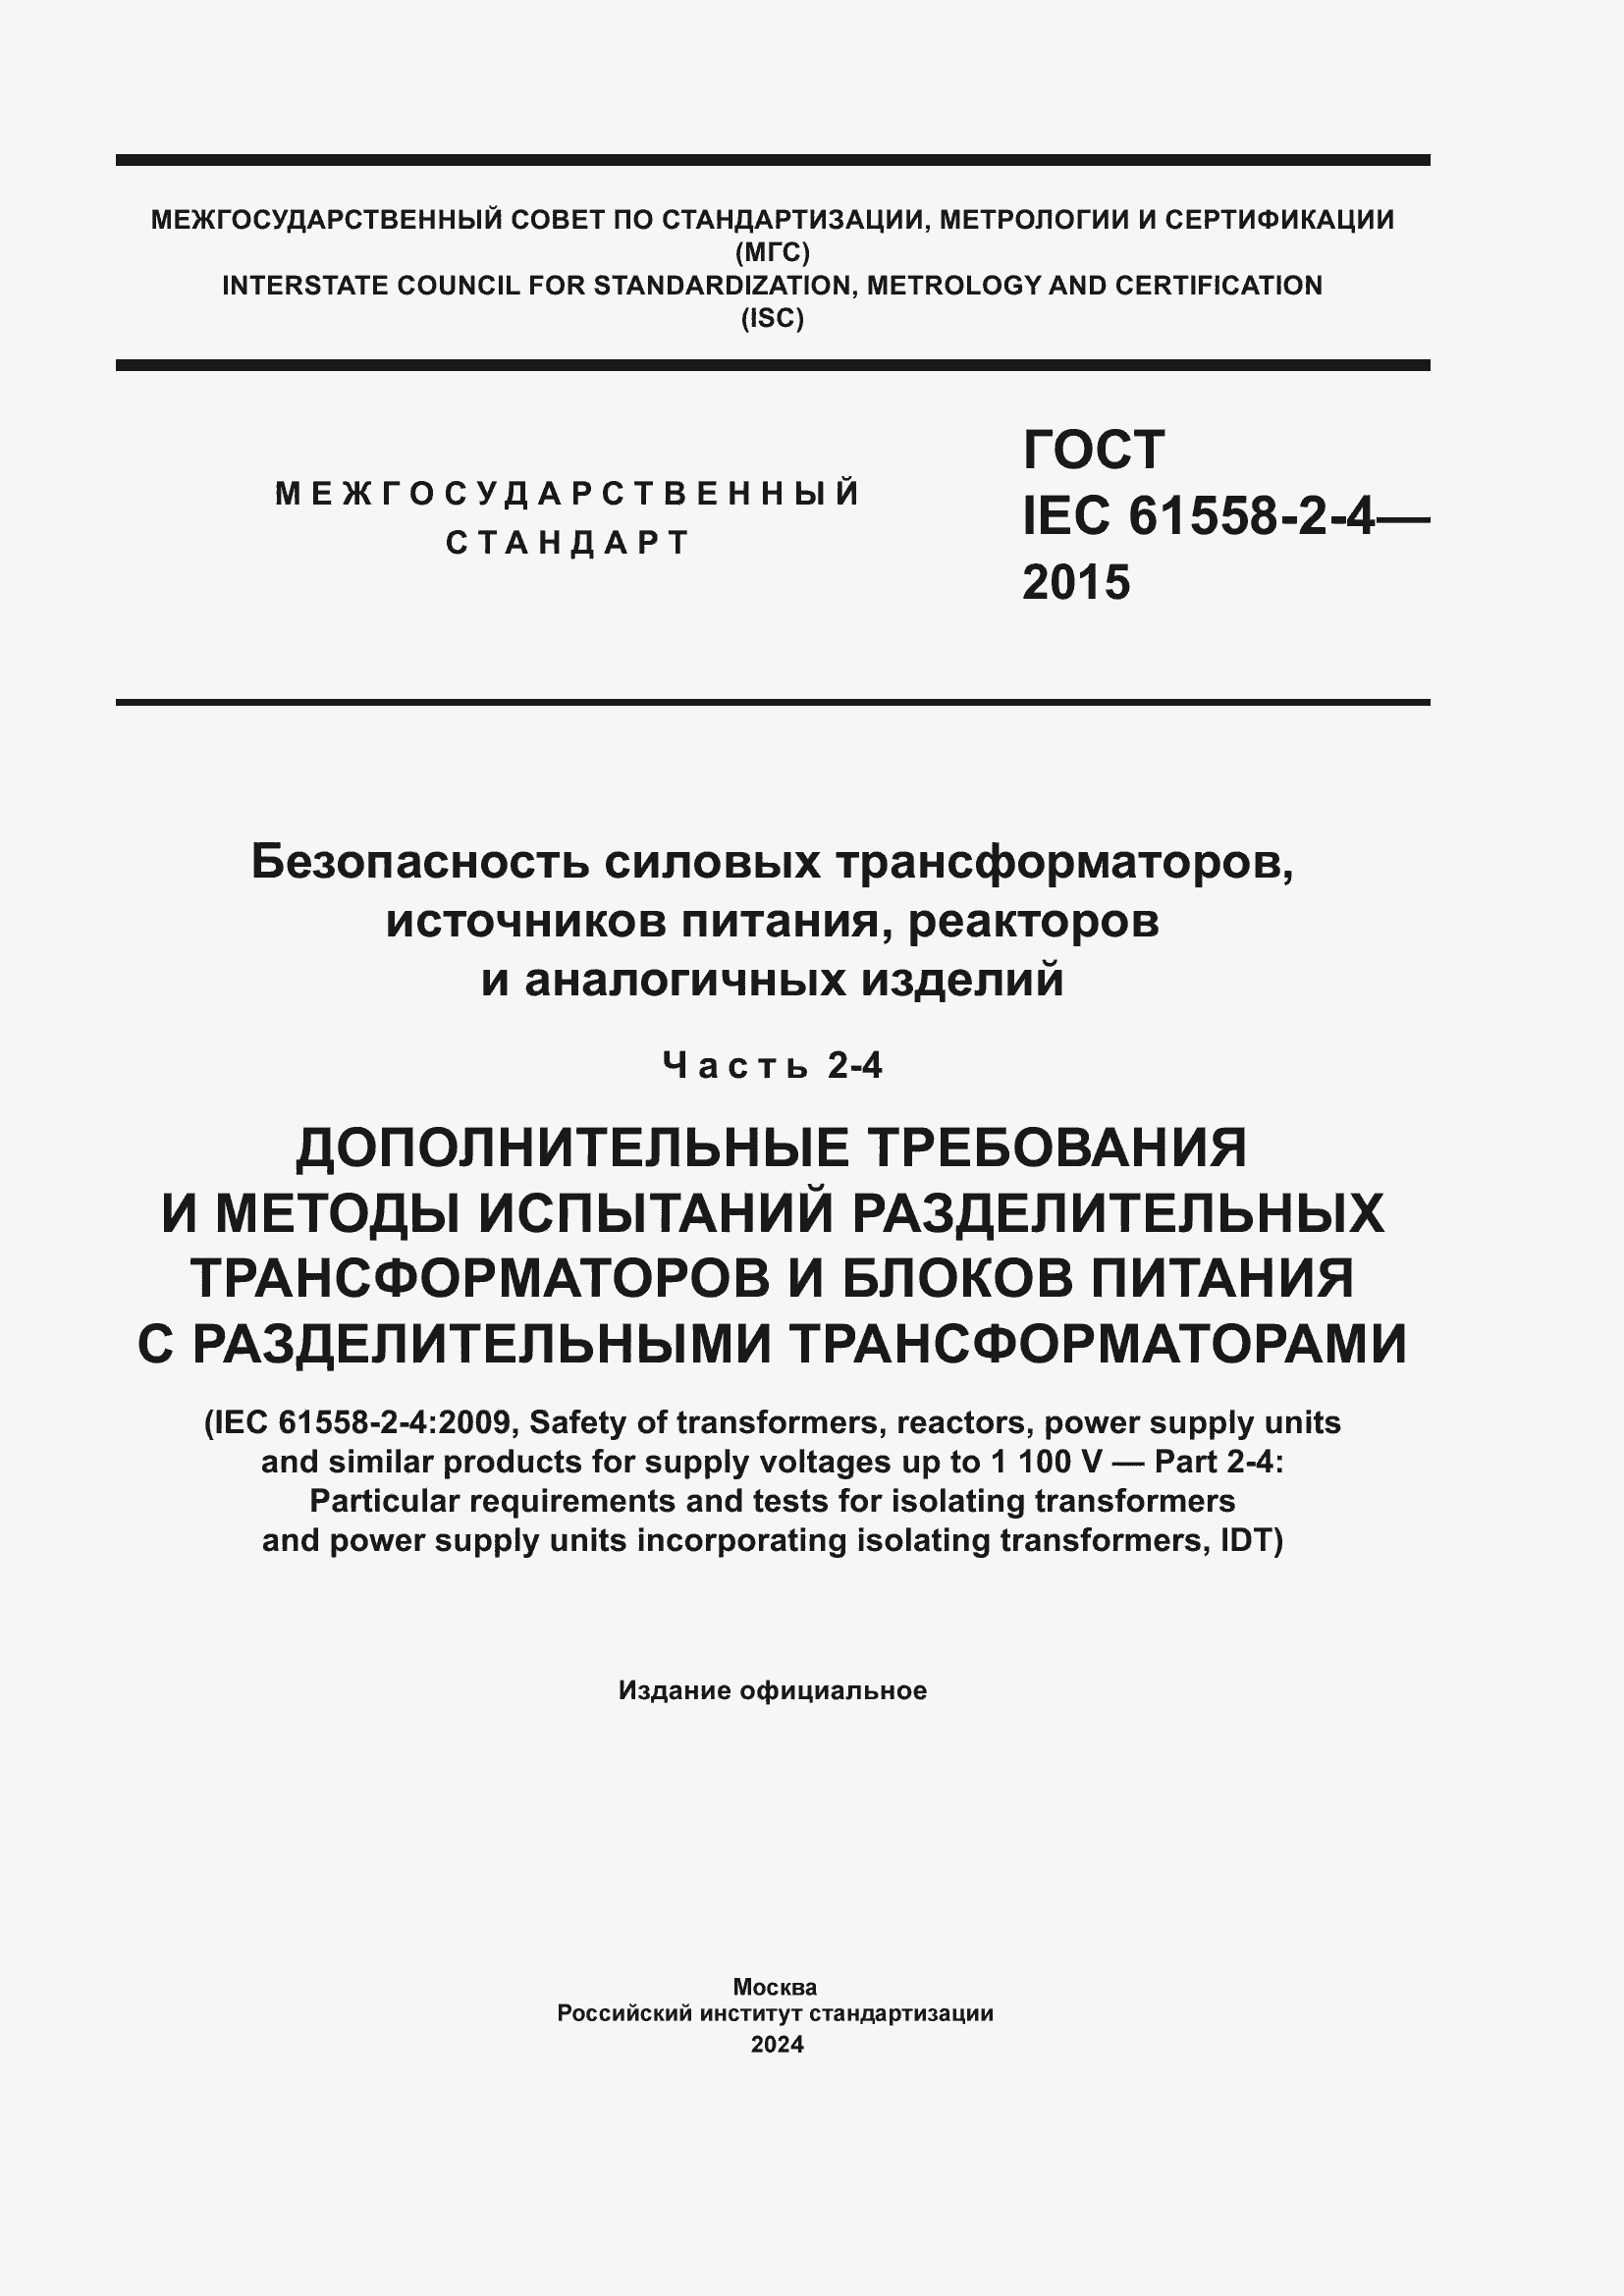  IEC 61558-2-4-2015.  1